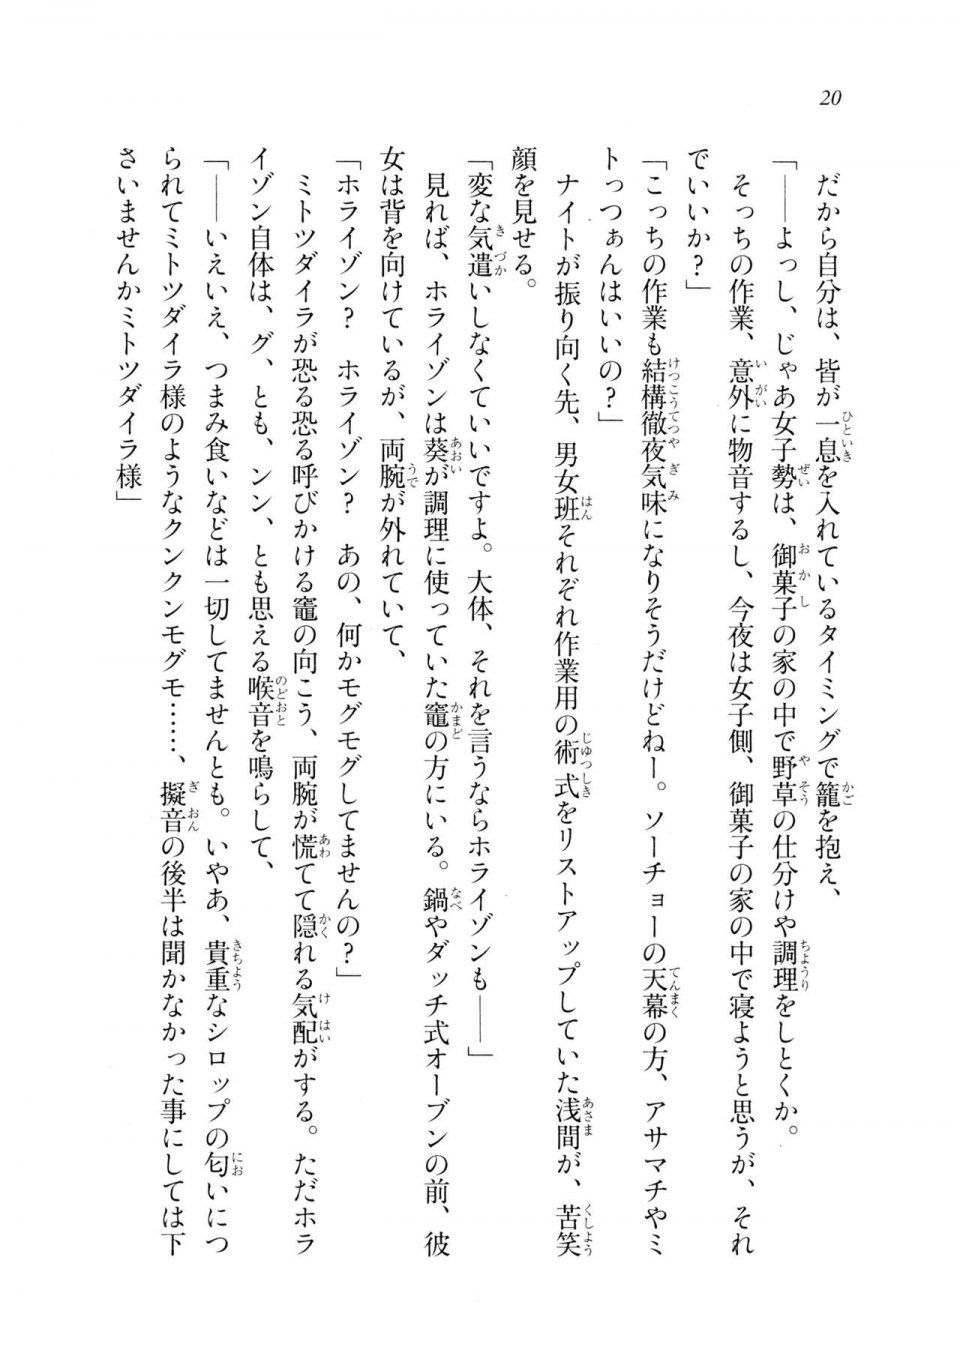 Kyoukai Senjou no Horizon LN Sidestory Vol 2 - Photo #19